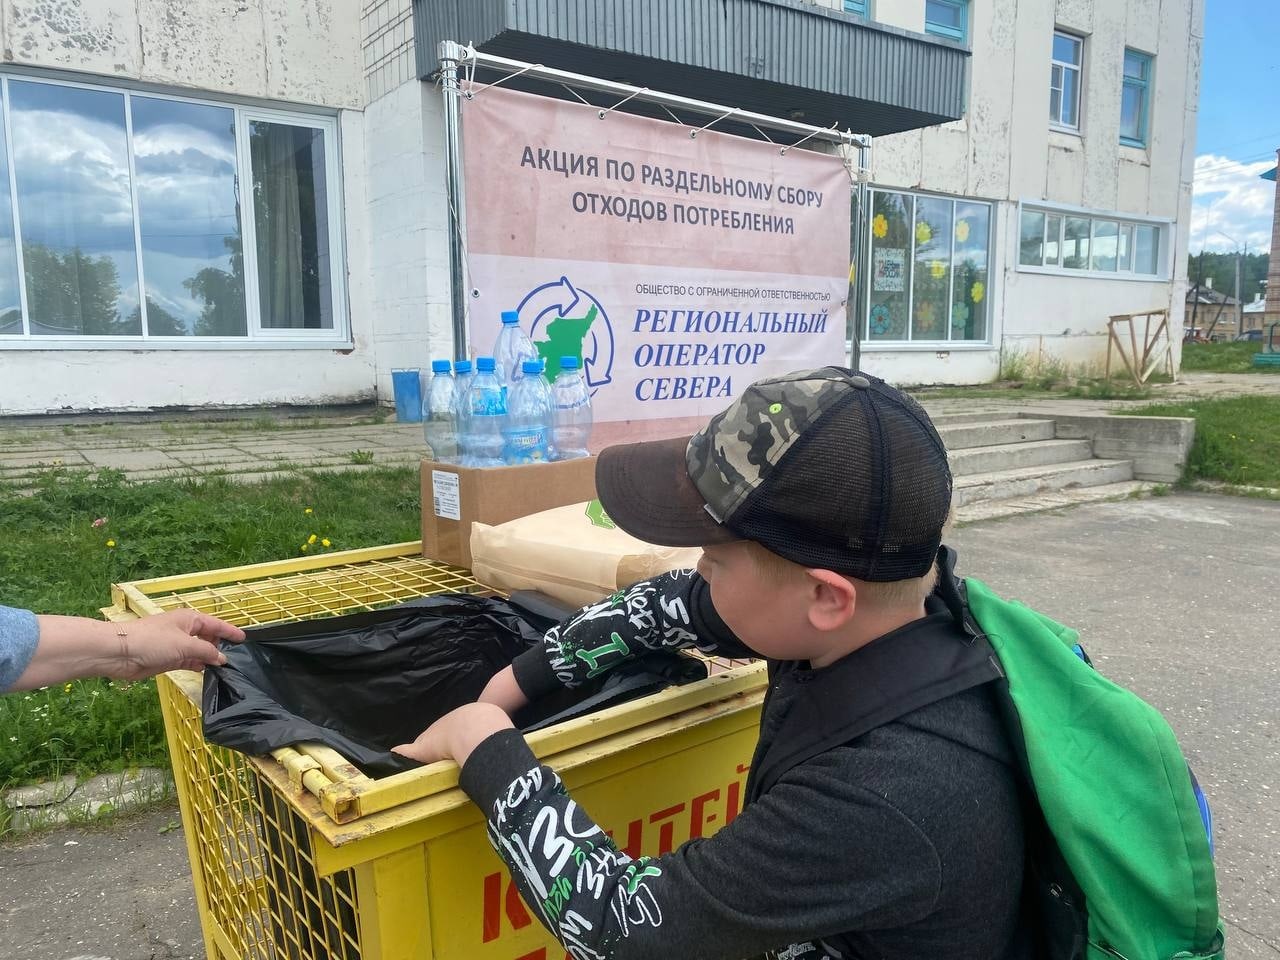 Раздельный сбор мусора в России